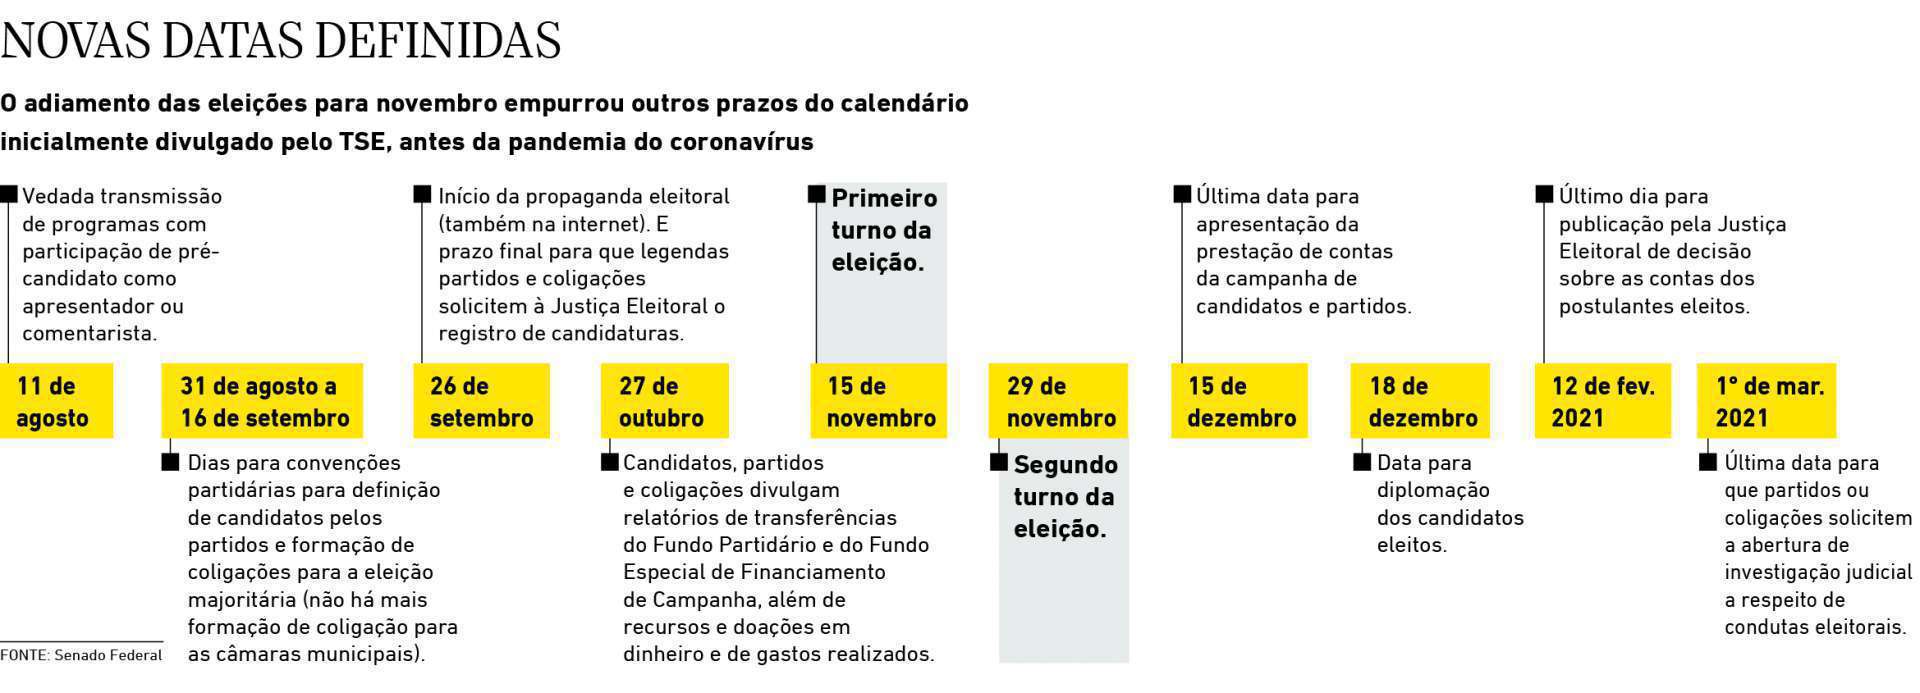 Aprovação da PEC alterará diversas datas do calendário eleitoral